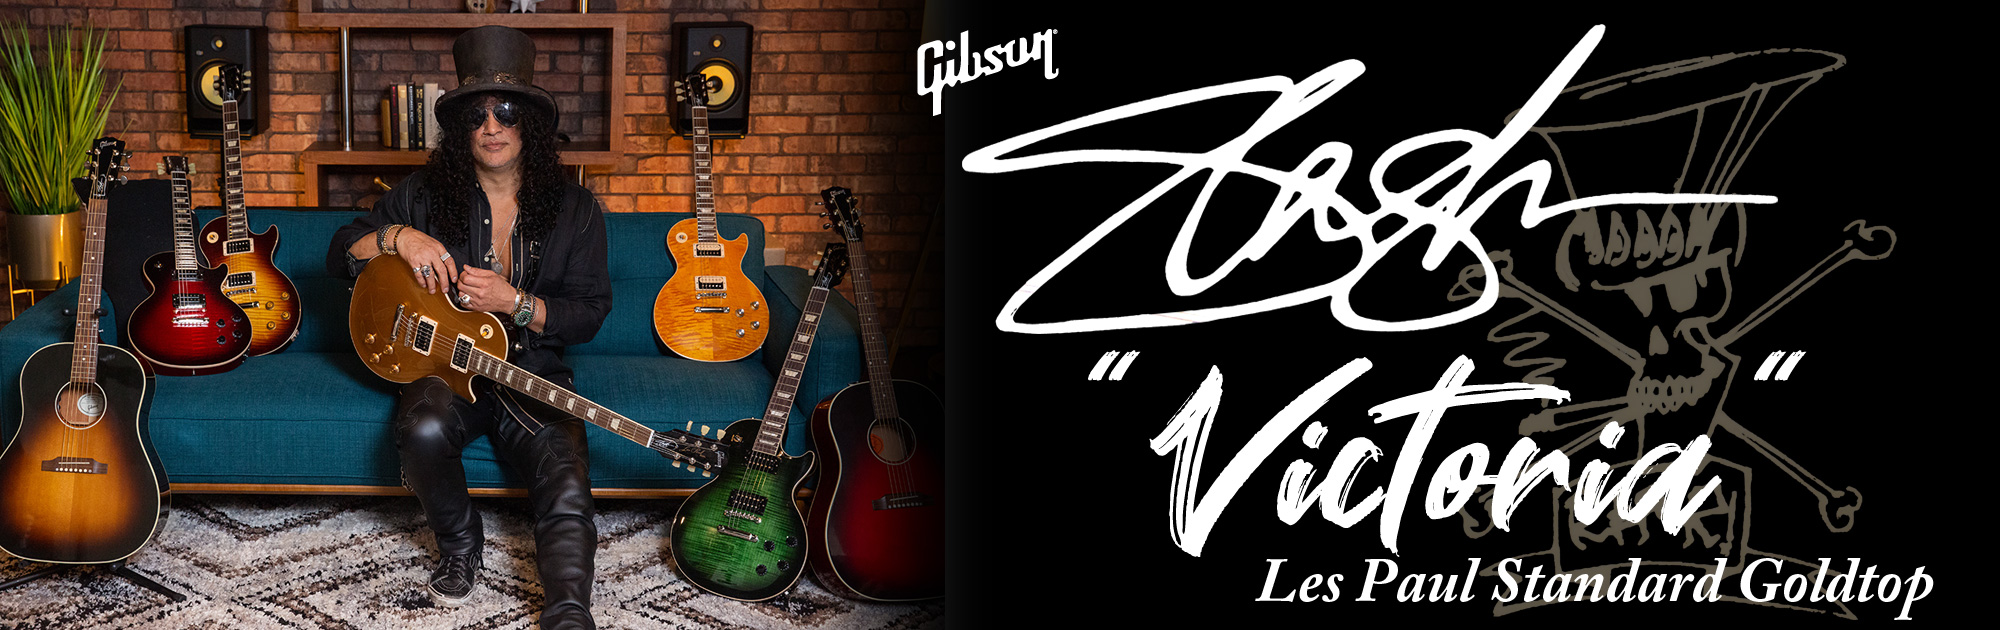 Gibson Slash Collection ギブソン・スラッシュ・コレクション【gclub Tokyo】 